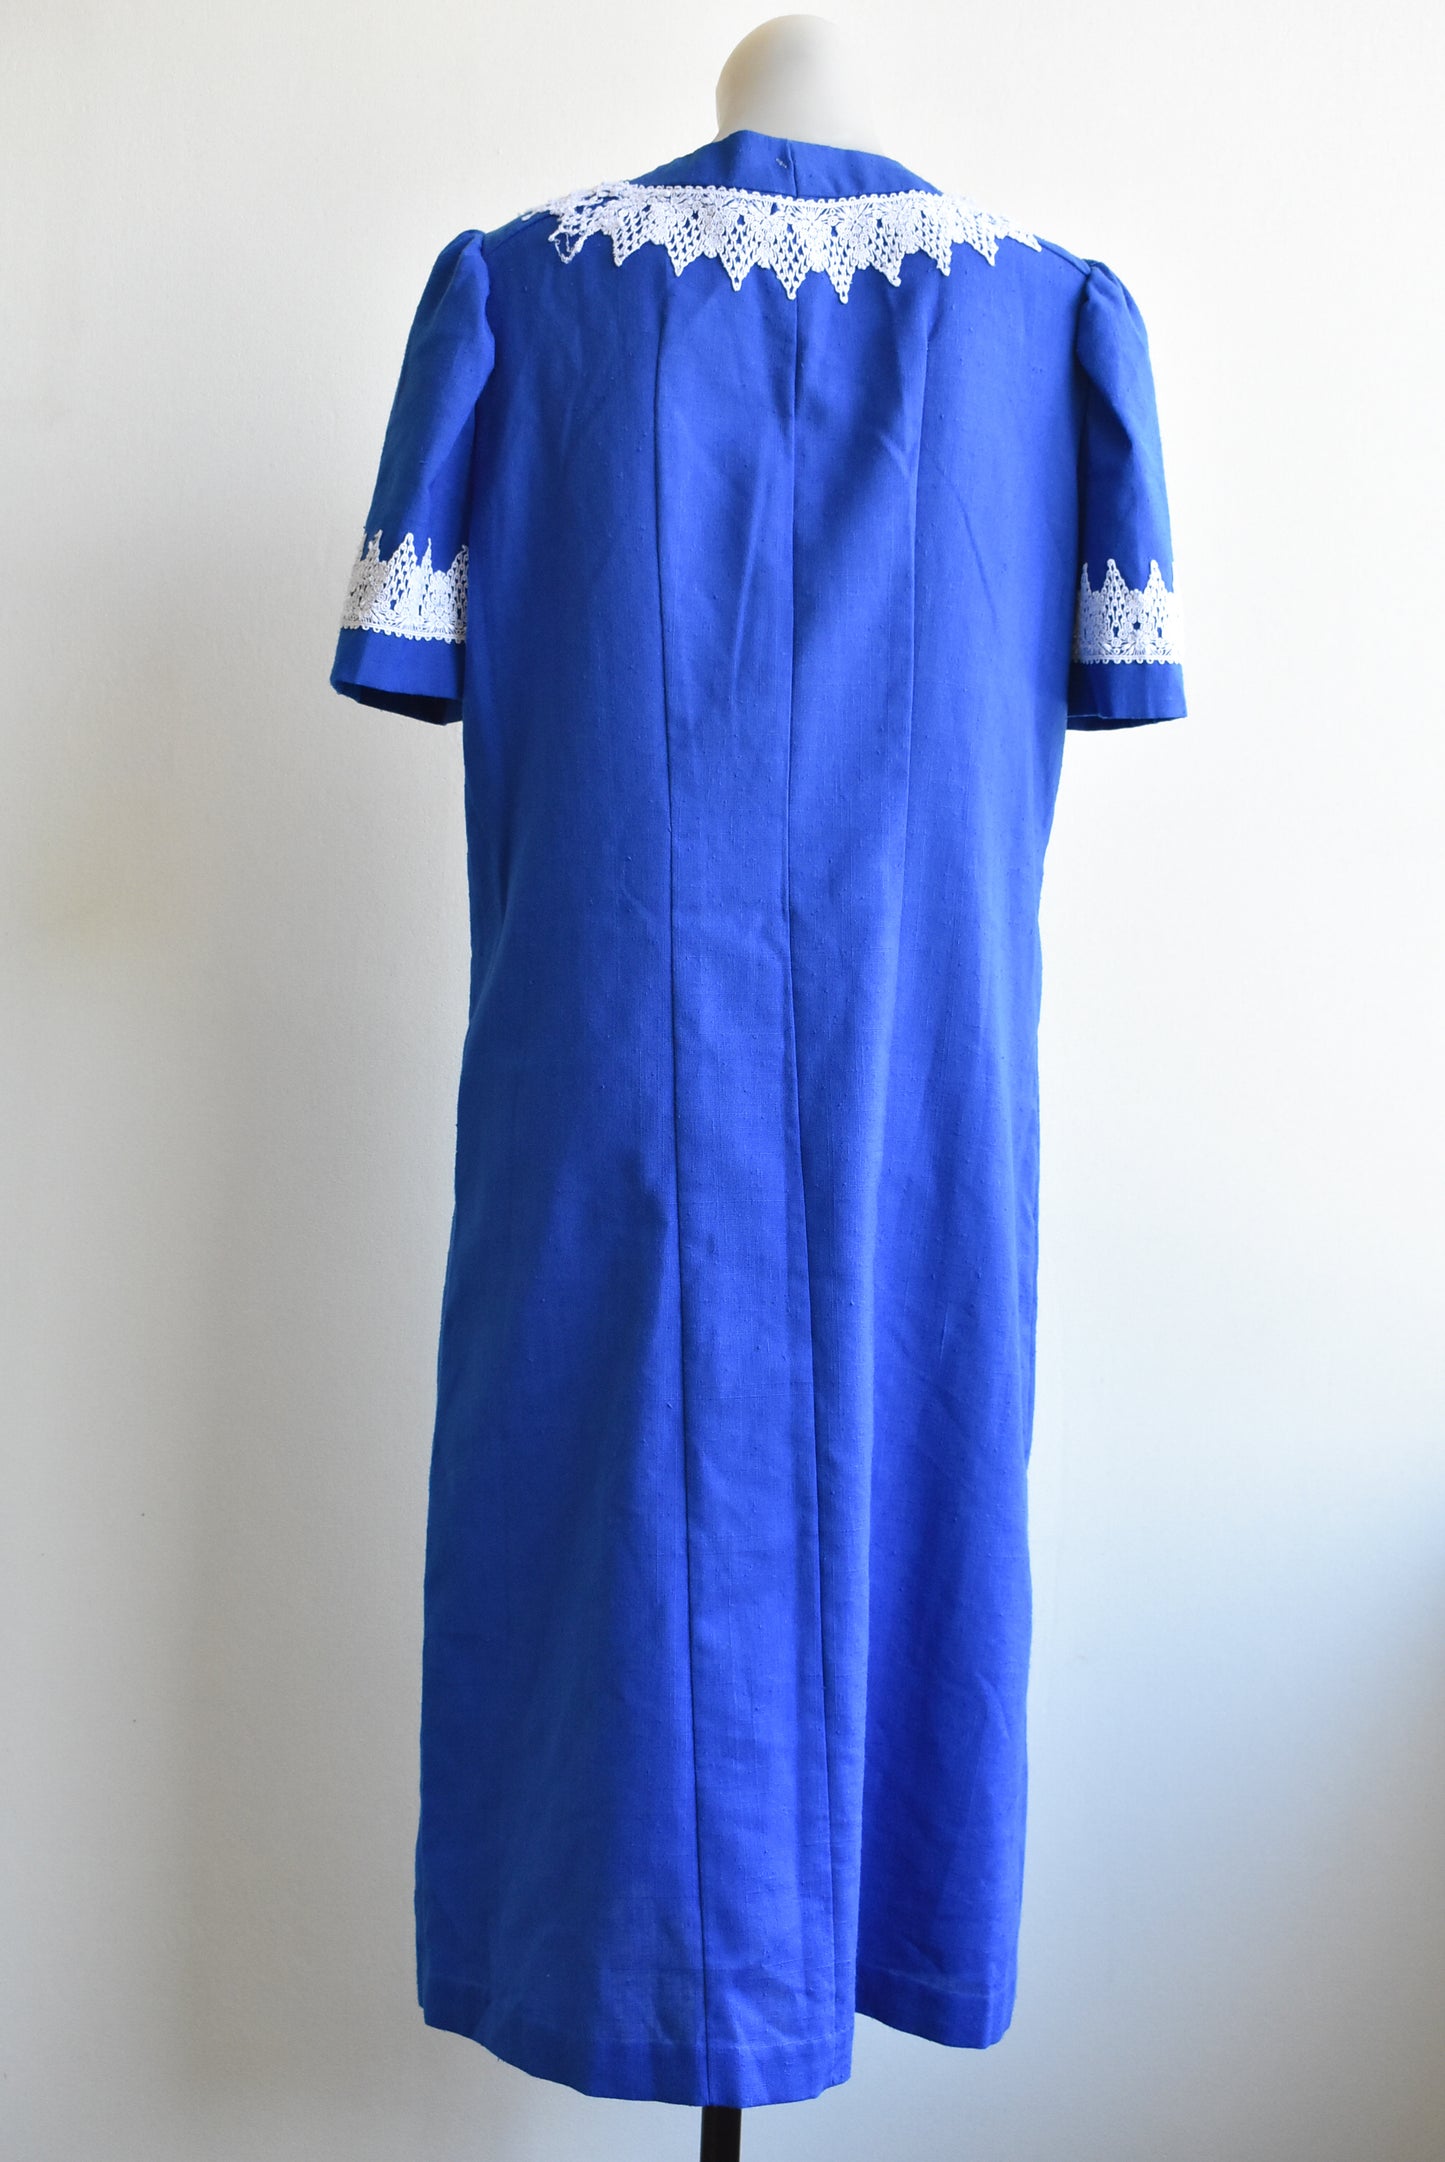 Vintage blue with lace trim dress, size M/L